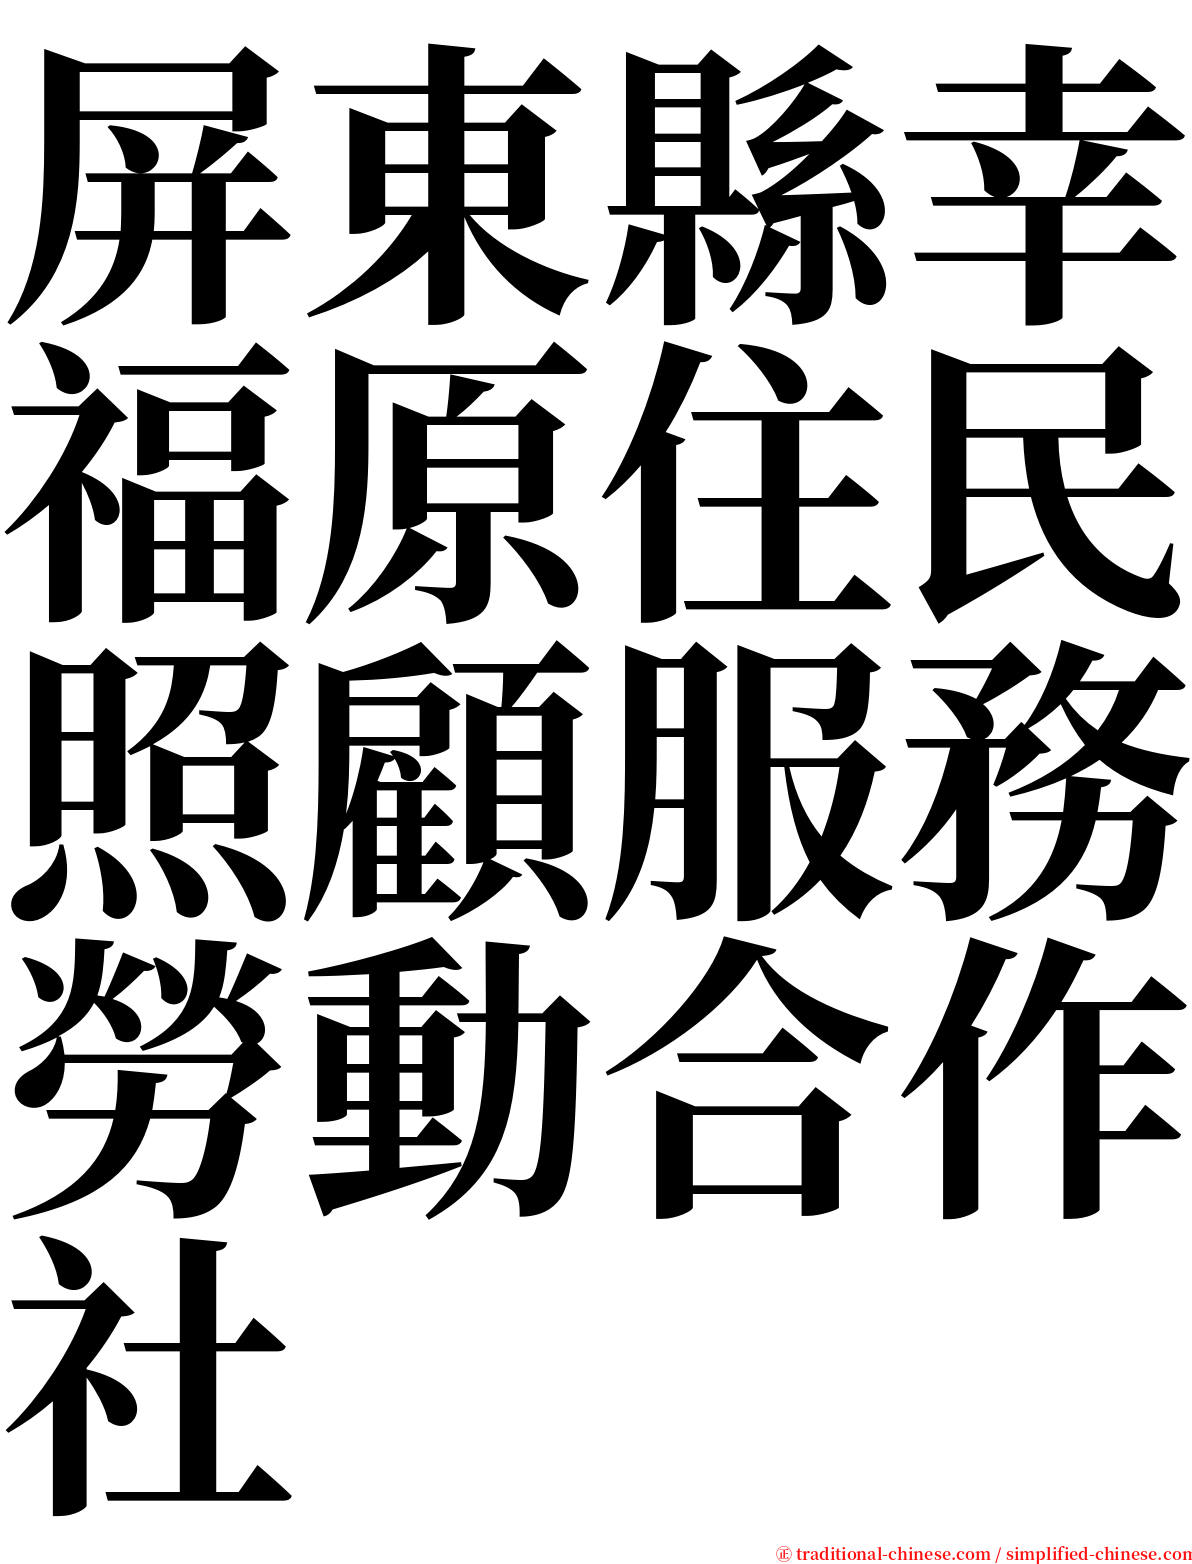 屏東縣幸福原住民照顧服務勞動合作社 serif font